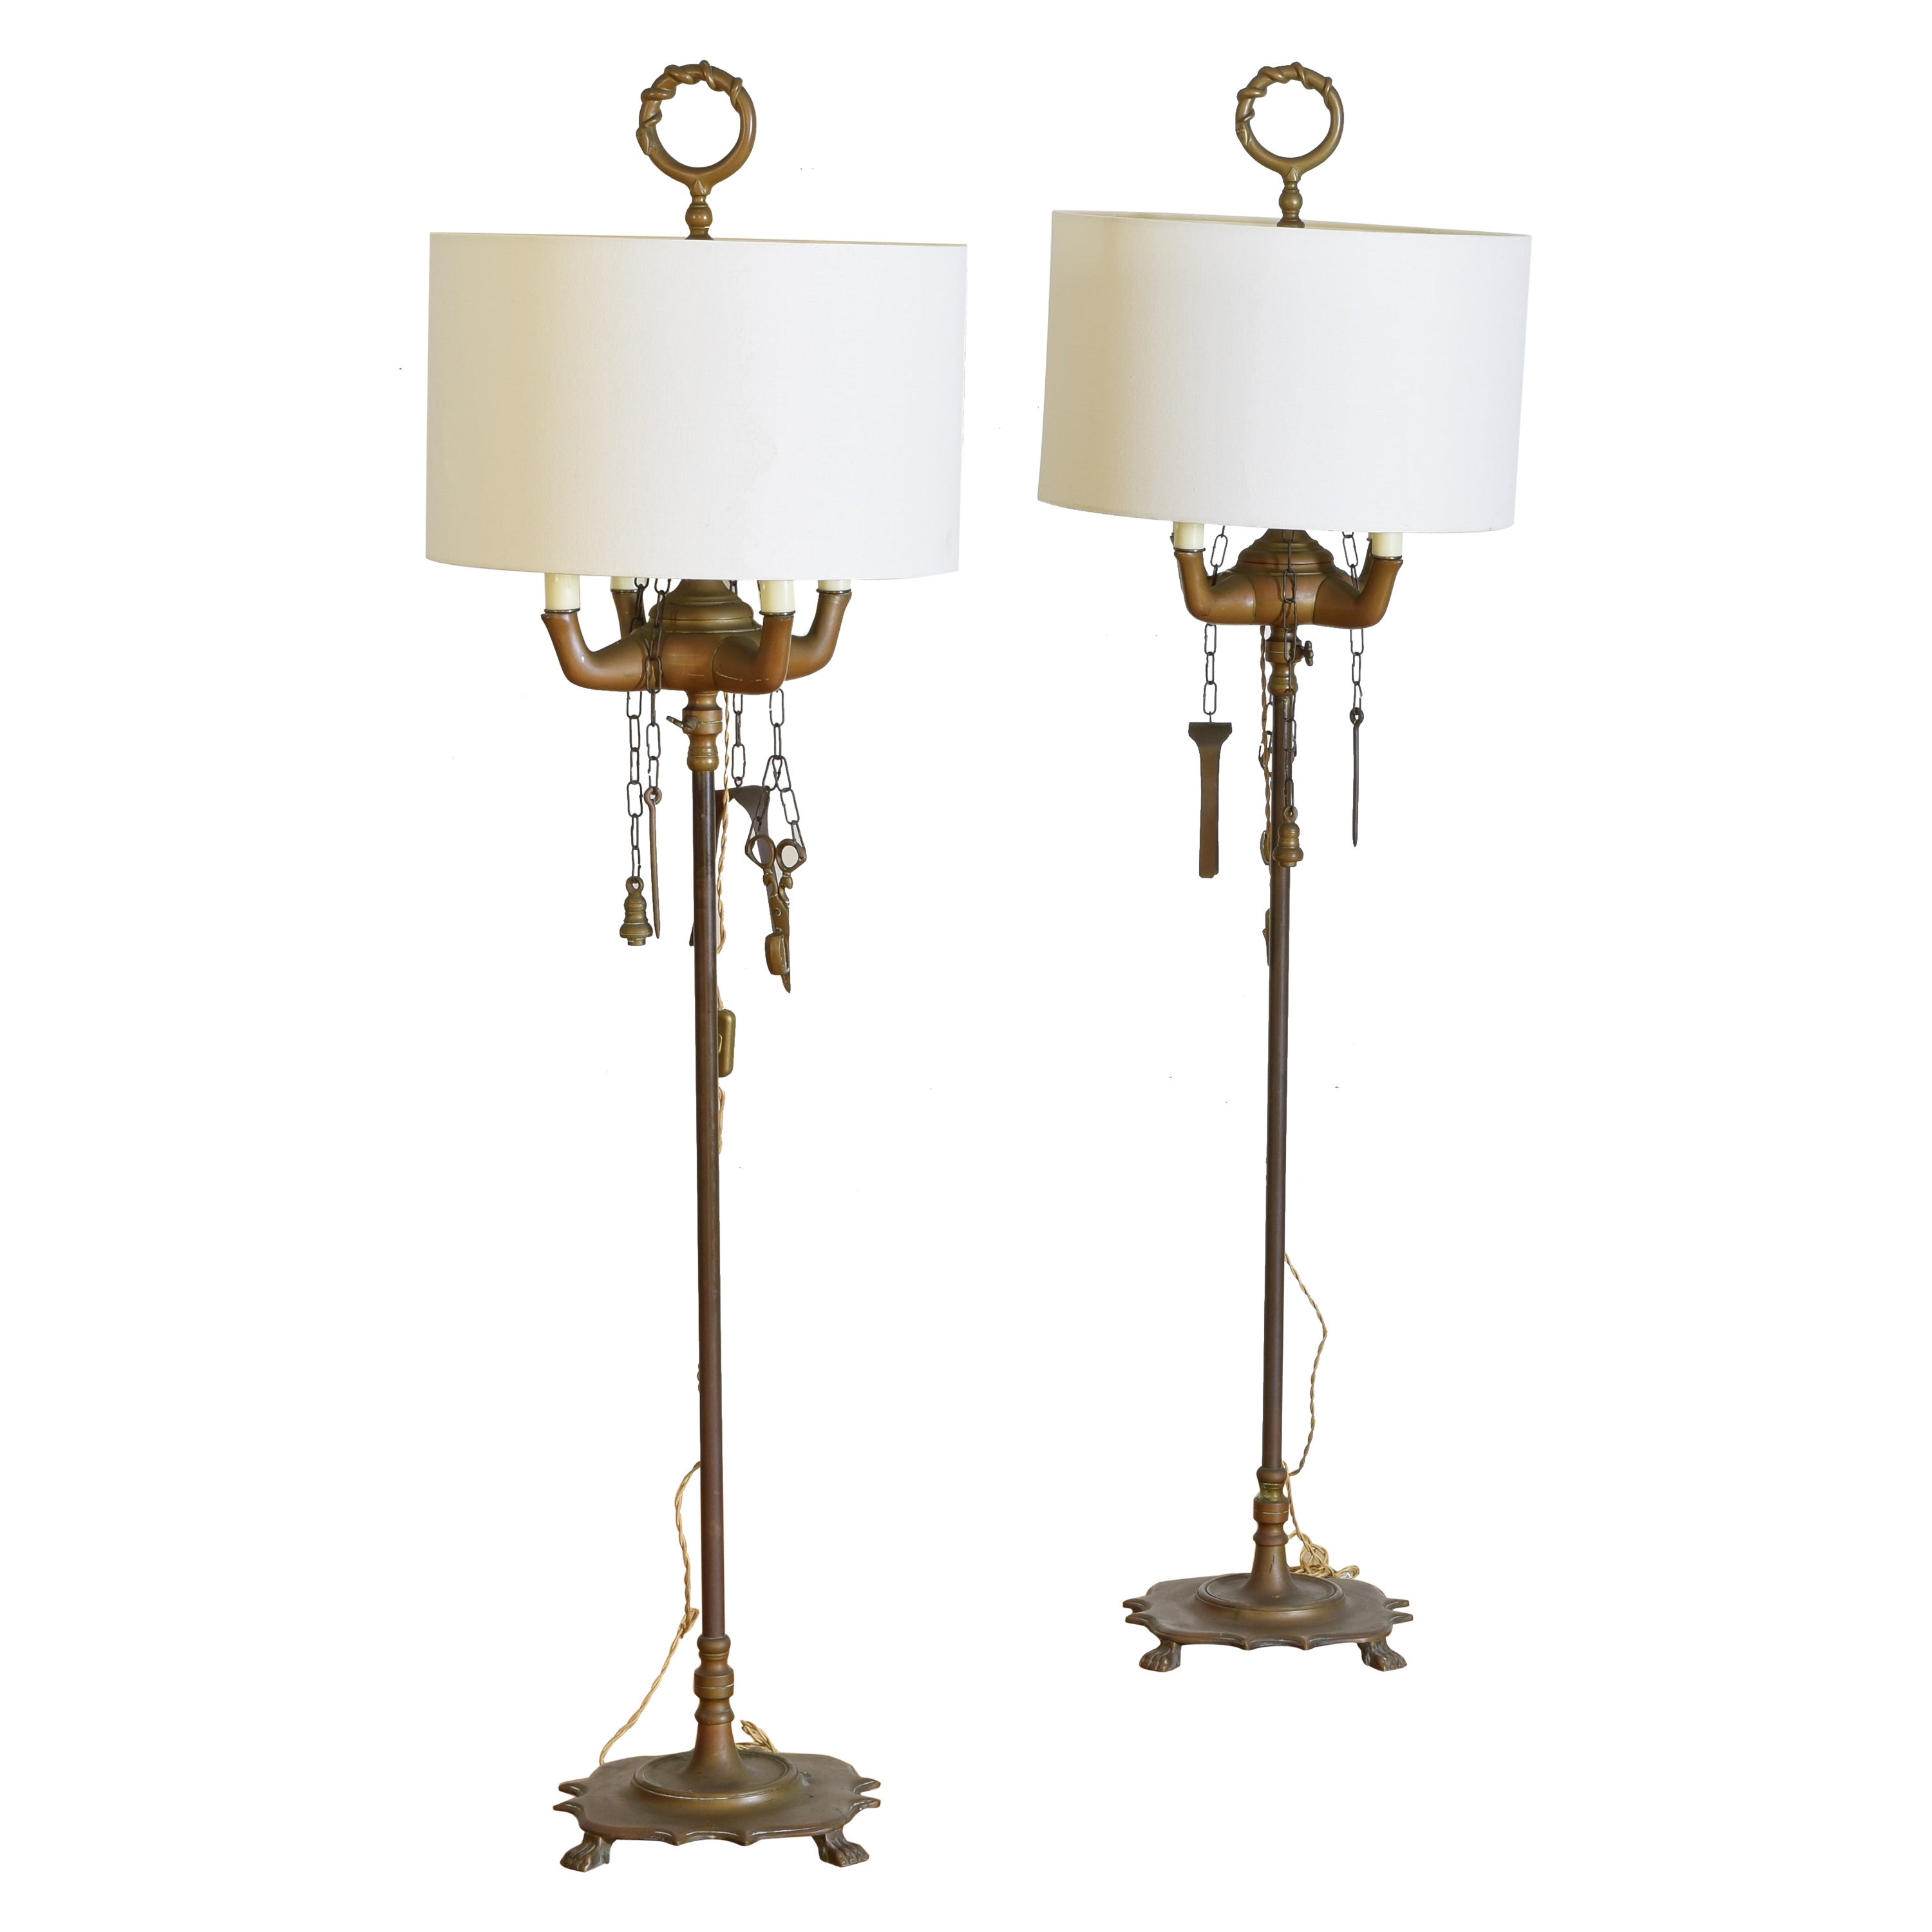 Paire de lampadaires Lucerne en laiton à 4 lumières de style baroque italien, dernier quart du 19e siècle